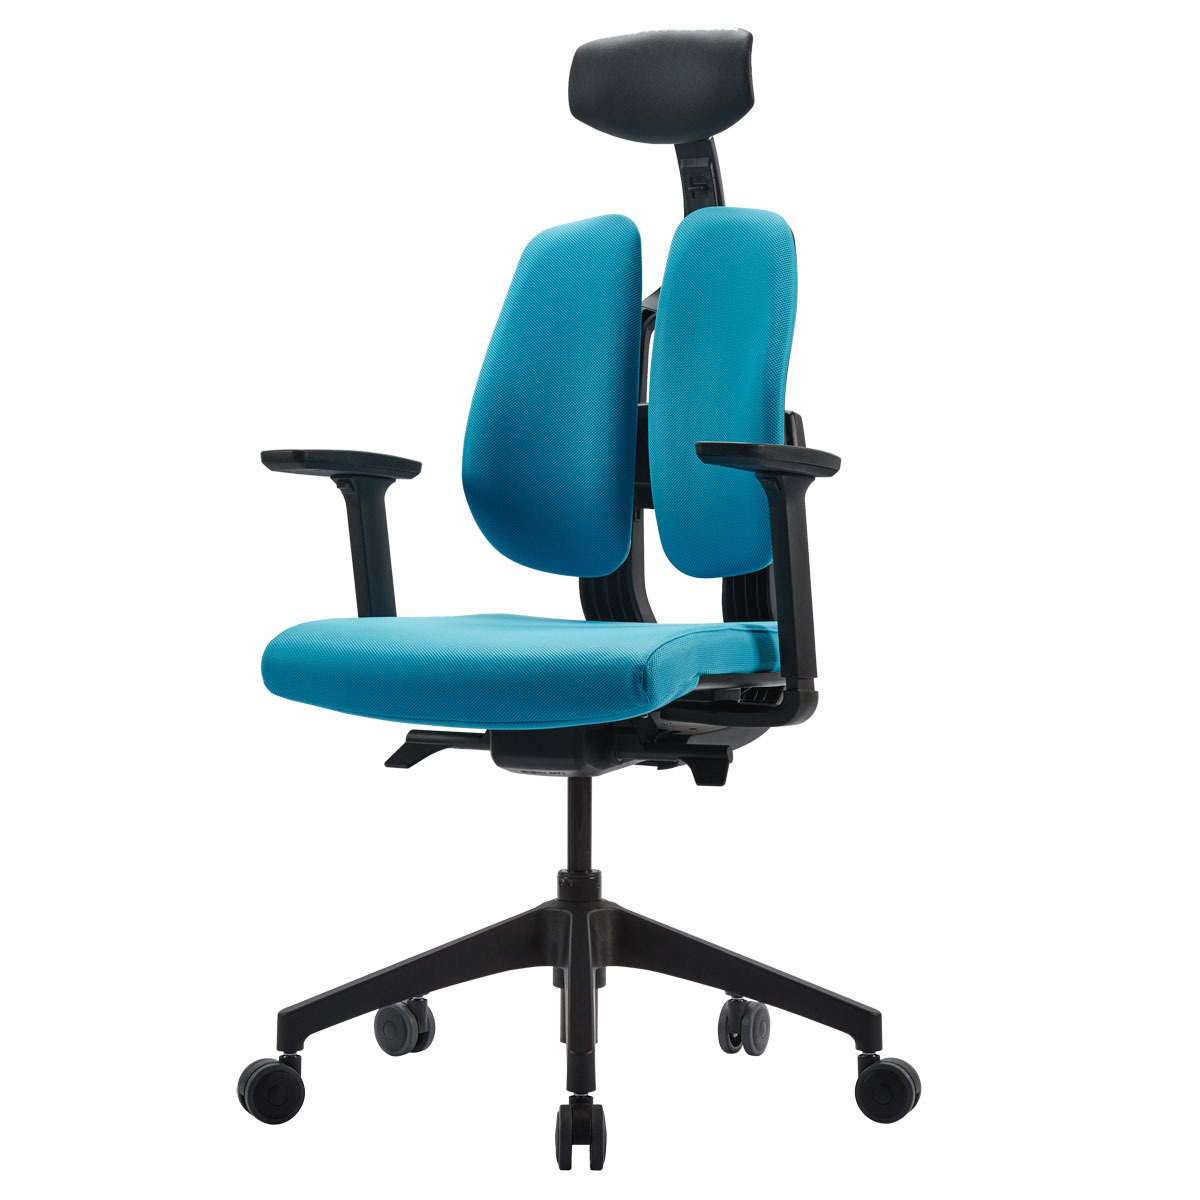 듀오백 사무용 의자 D2-200 Duoback Office Chair 사무용의자, 블루 